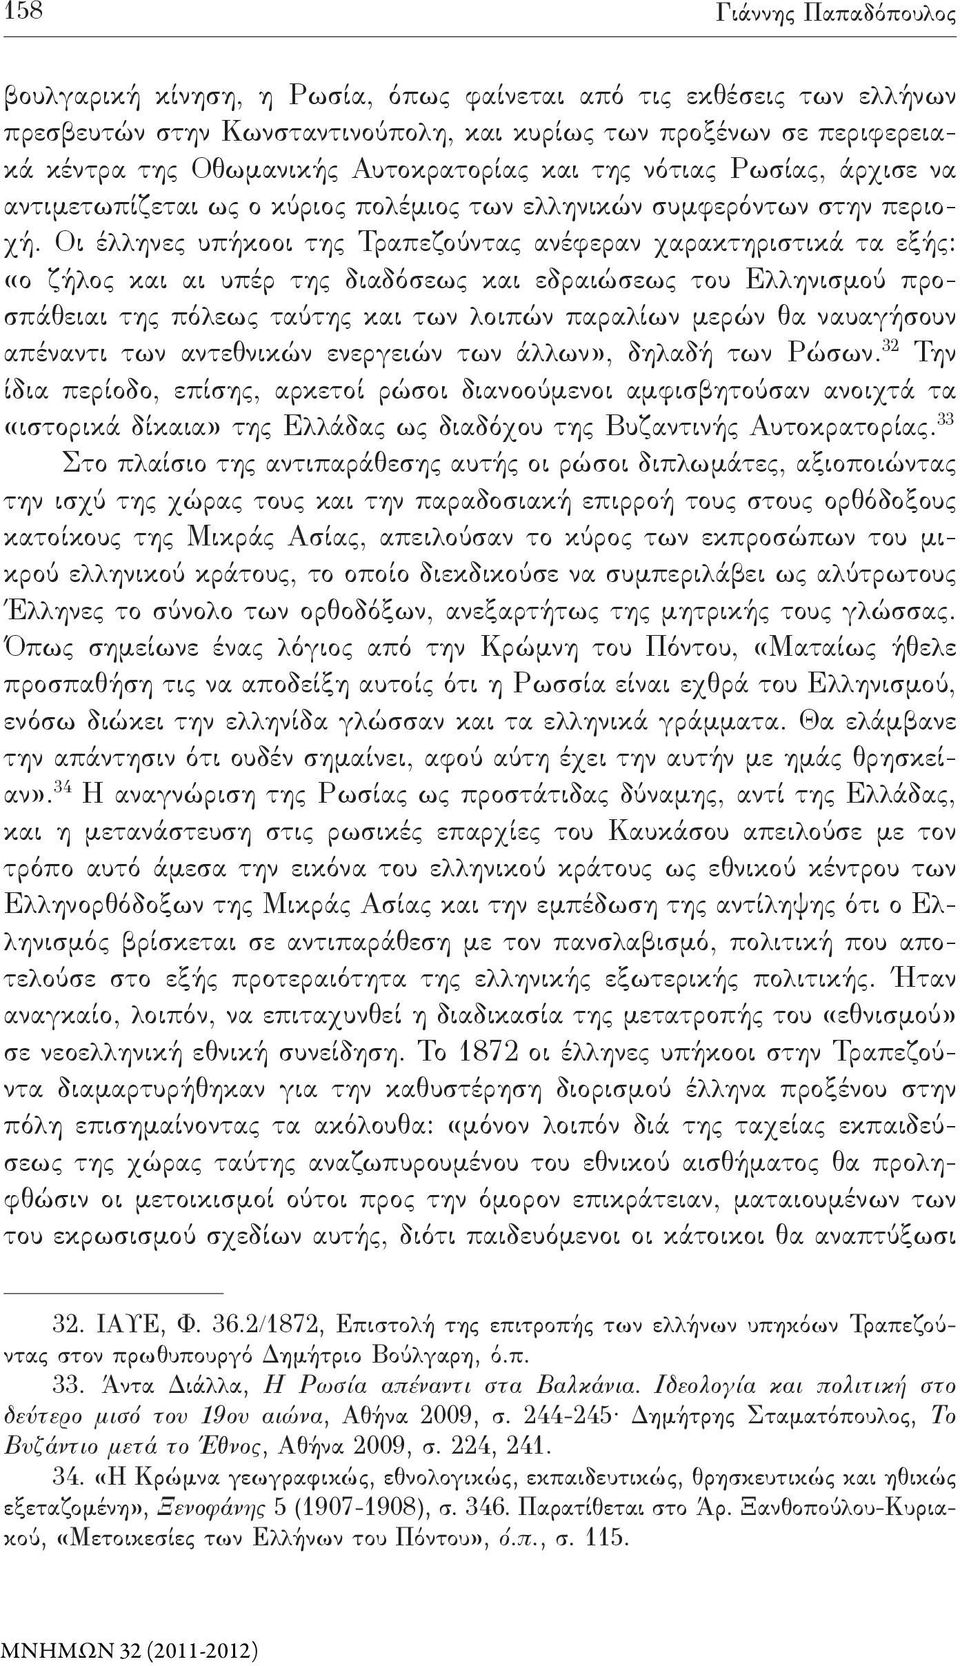 Οι έλληνες υπήκοοι της Τραπεζούντας ανέφεραν χαρακτηριστικά τα εξής: «ο ζήλος και αι υπέρ της διαδόσεως και εδραιώσεως του Ελληνισμού προσπάθειαι της πόλεως ταύτης και των λοιπών παραλίων μερών θα